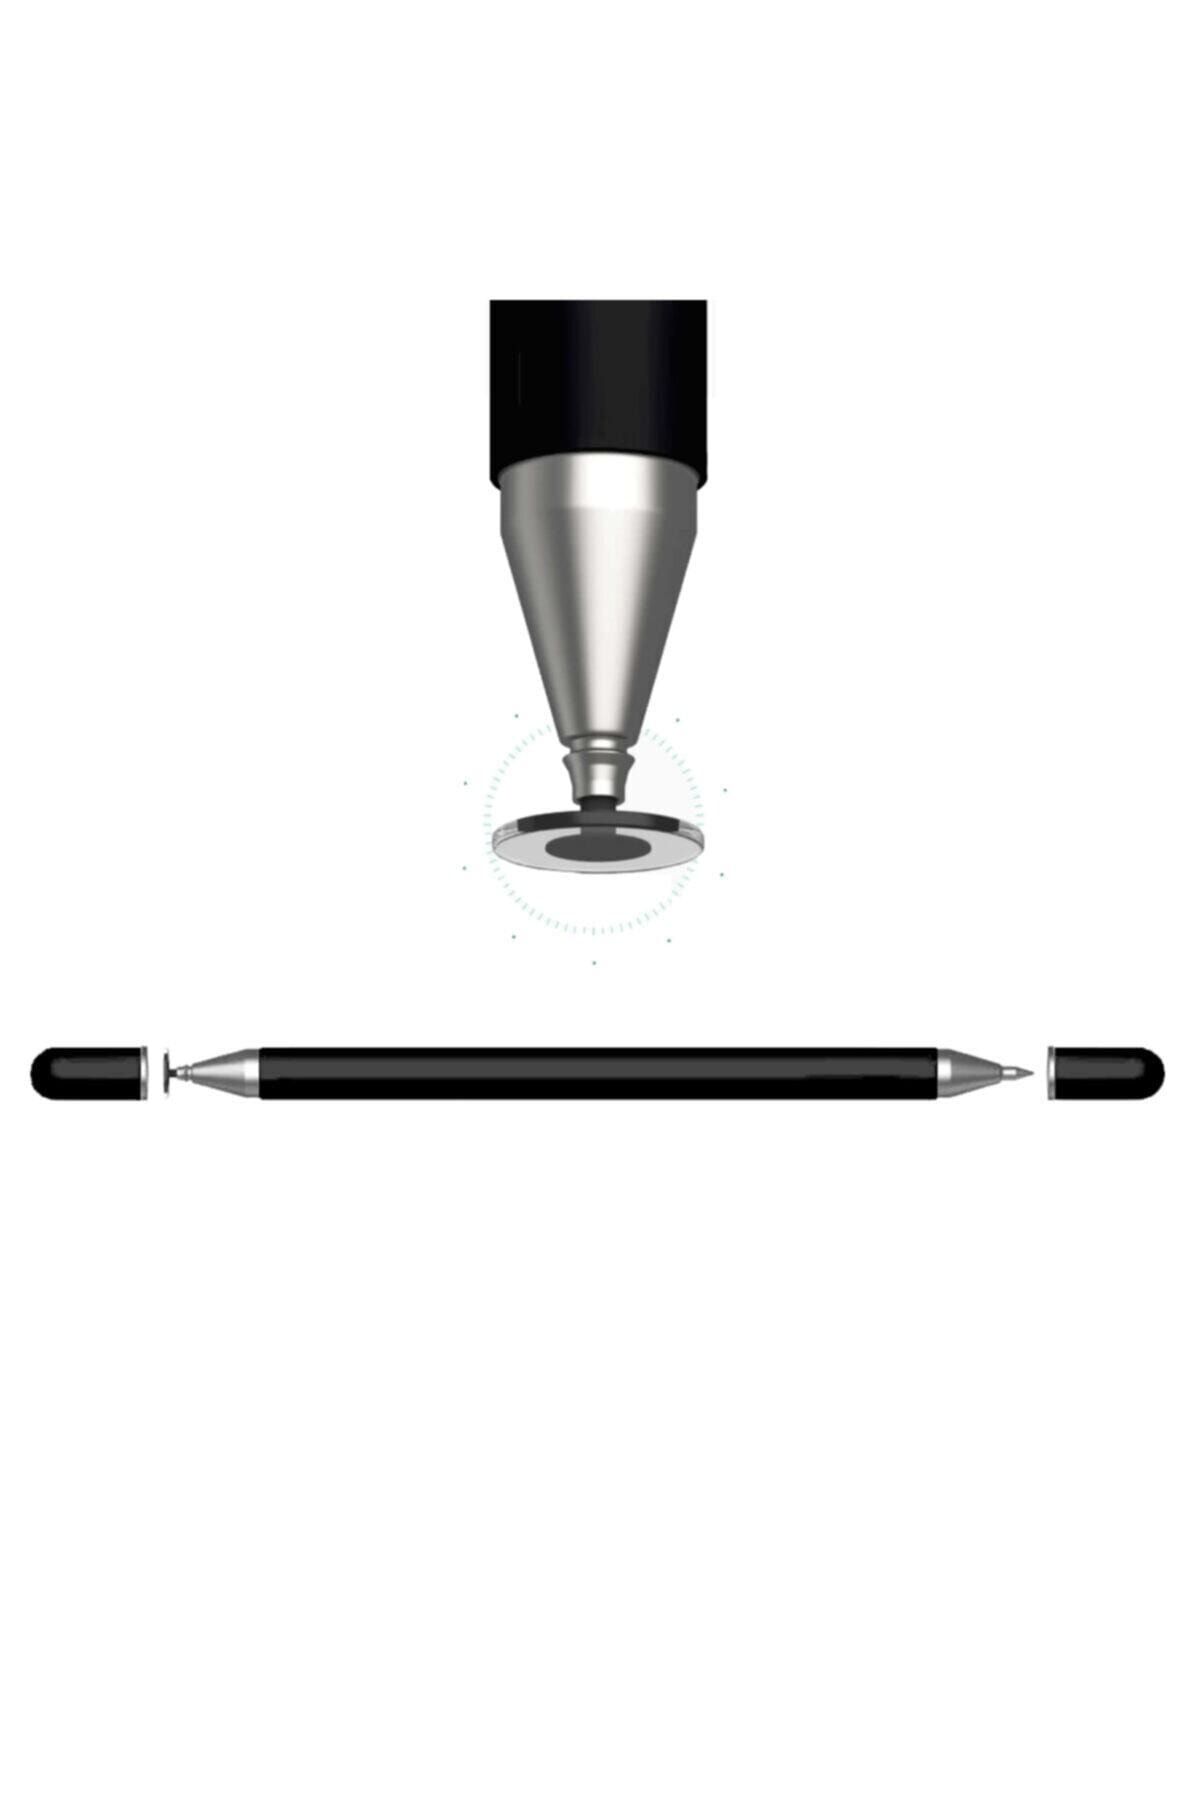 CONOCER Dokunmatik Kalem Tüm Cihazlara Uyumlu Tablet Telefon İçin Çizim & Yazı Kalemi 2 In 1 Disk Uçlu